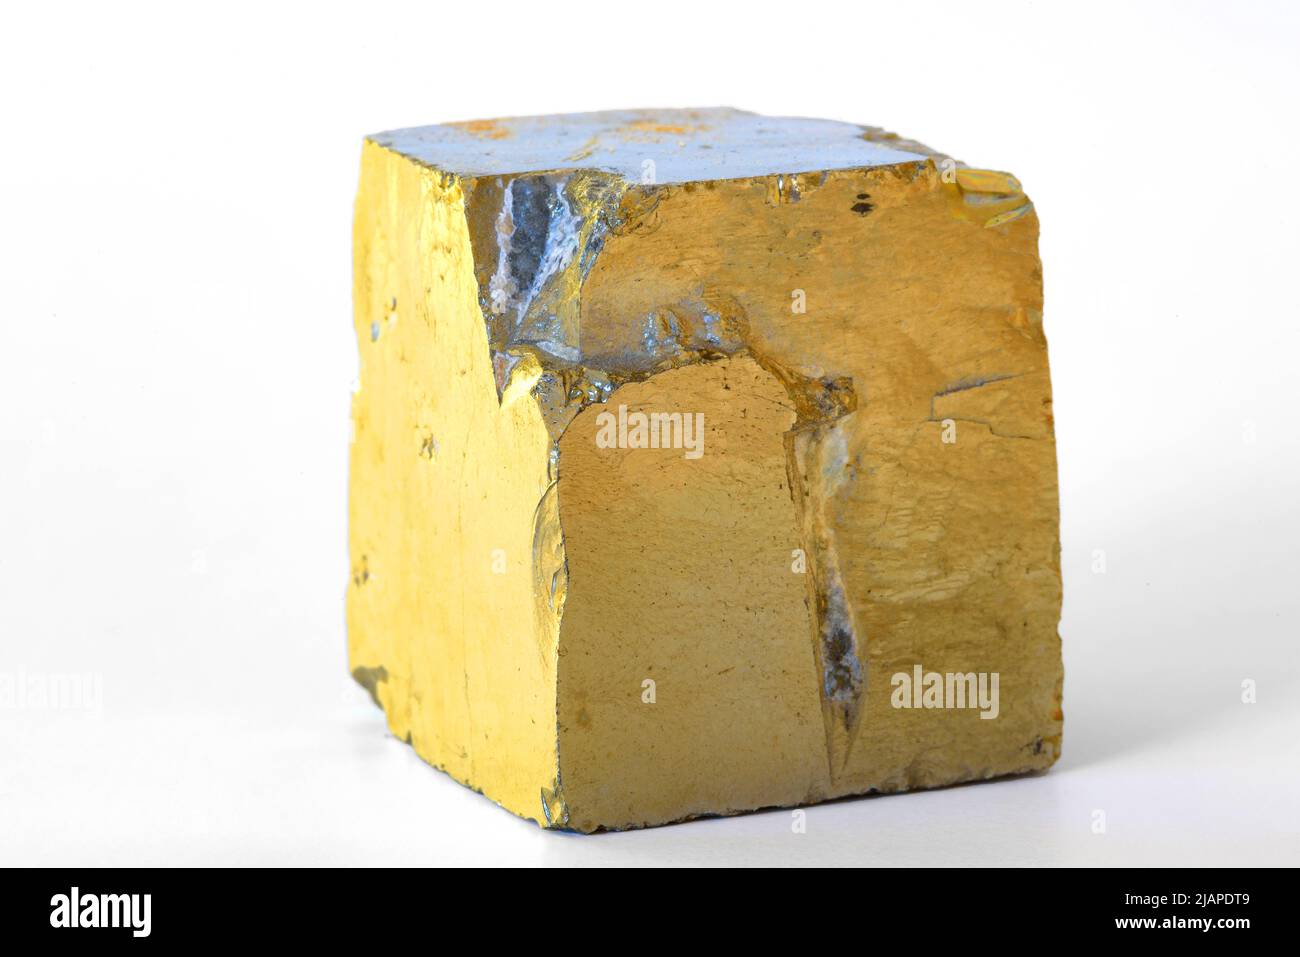 Cristal de pyrite photographié sur fond blanc. La pyrite minérale, ou pyrite de fer, également connu sous le nom d'or de idiot, est un sulfure de fer avec la formule chimique FES?. La pyrite est le minéral sulfuré le plus abondant. Le lustre métallique de la pyrite et sa teinte jaune-laiton pâle lui donnent une ressemblance superficielle à l'or, d'où le surnom bien connu de l'or de l'imbécile Banque D'Images